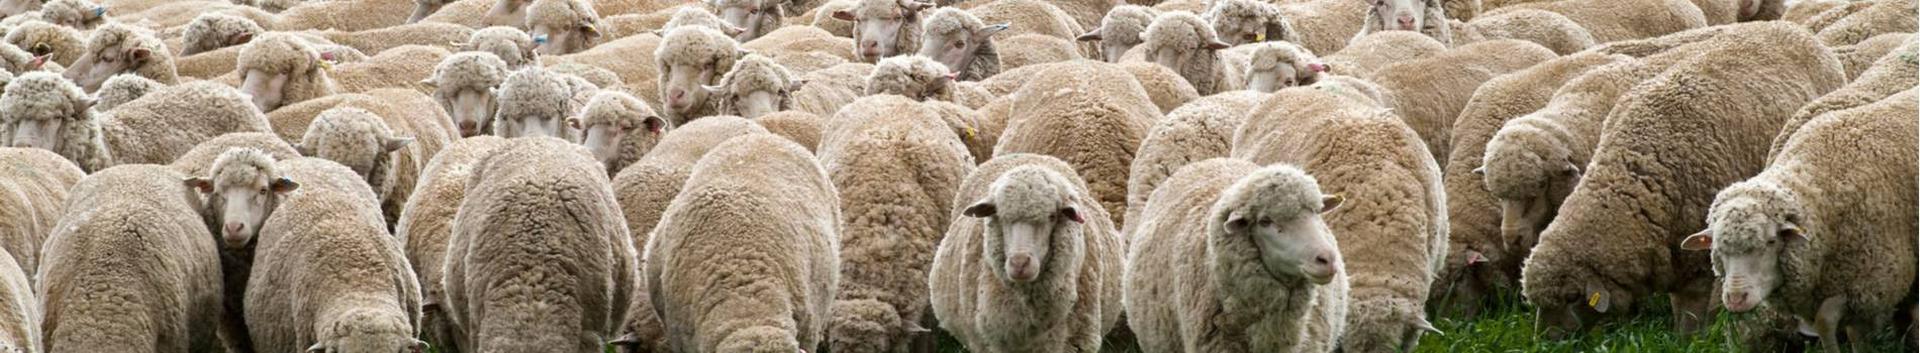 Hallimäe farm OÜ jätkas endiselt lambakasvatuse ja -aretusega. Kasvatatakse ja müüakse lleyni tõuloomi ja puhtaverelisi meriino peenvilla loomi. Lihalooma...